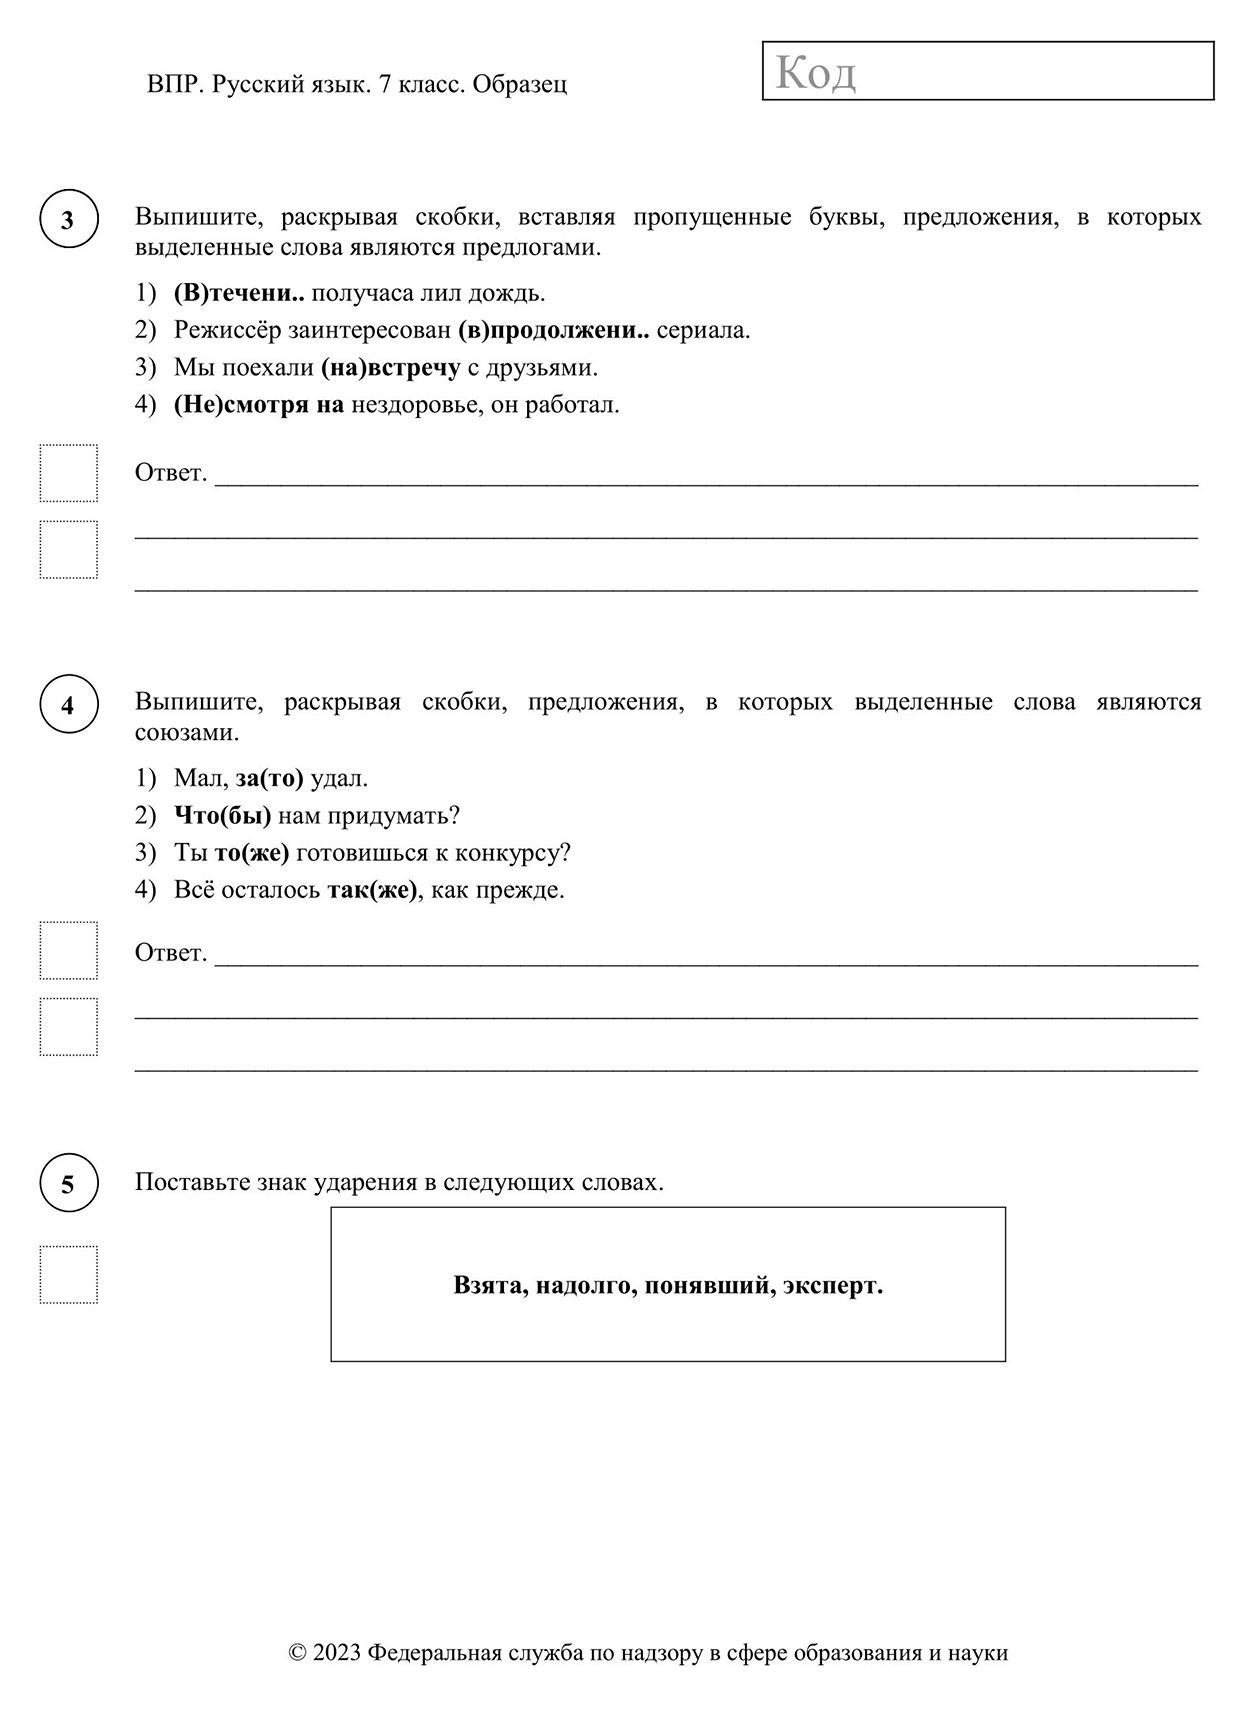 Пример заданий из всероссийской проверочной работы по русскому языку для седьмого класса. Источник: fioco.ru